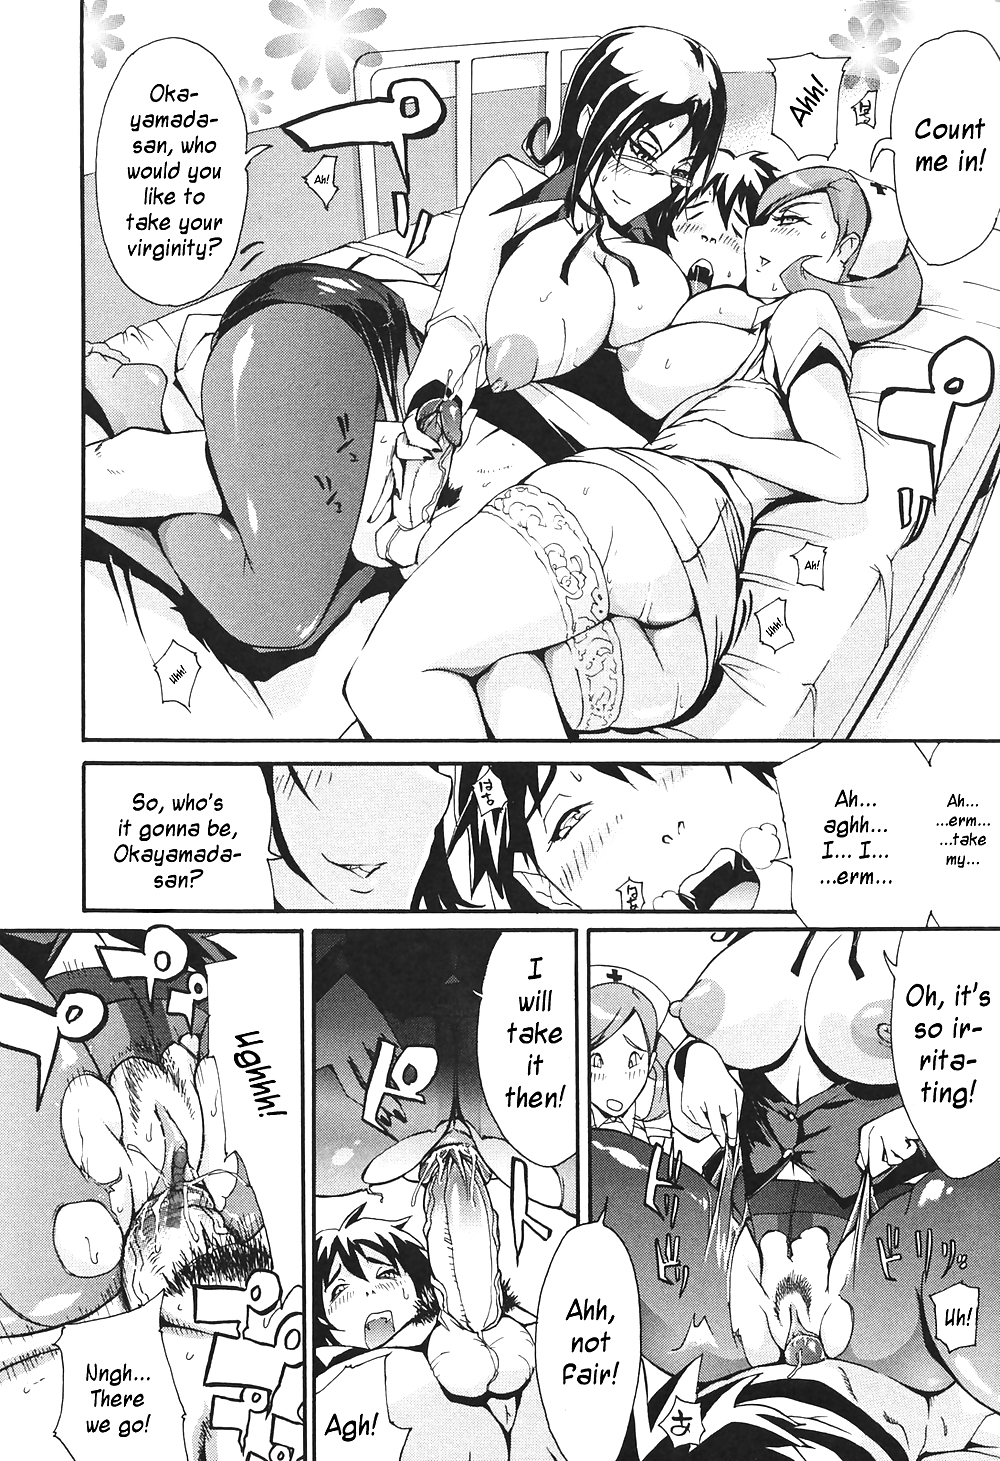 (fumetto hentai) unioshi opere erotiche
 #21733580